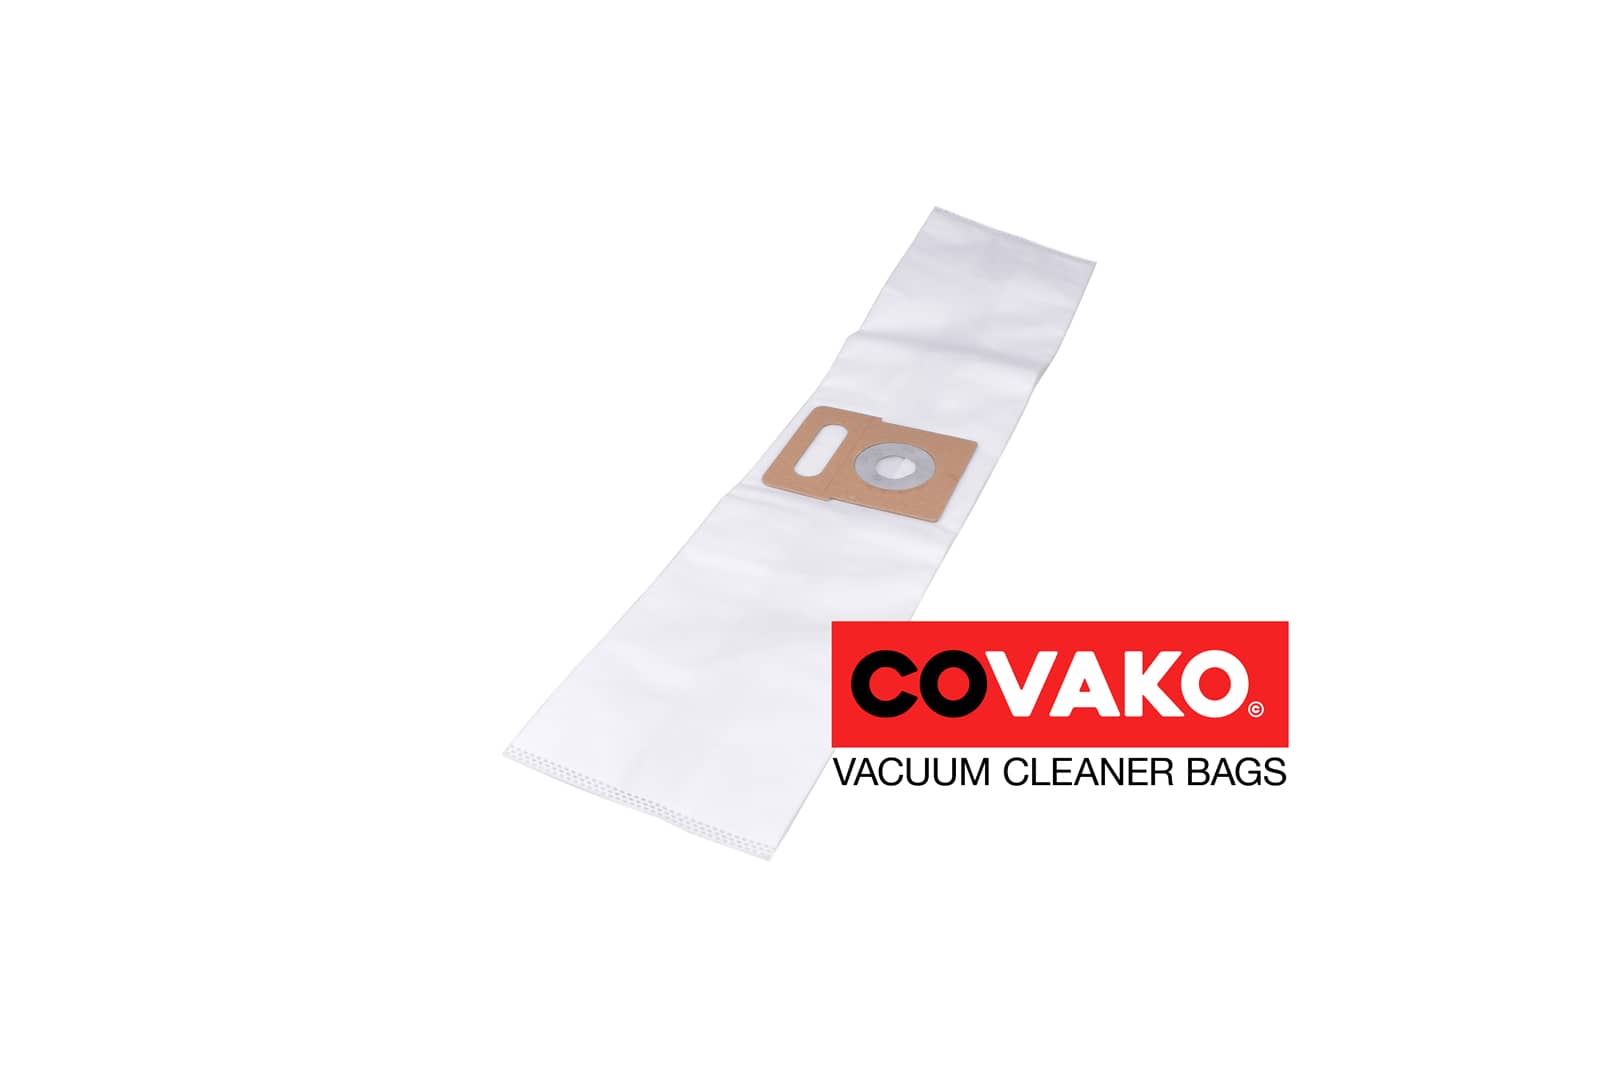 Clean a la Card Profi / Synthesis - Clean a la Card vacuum cleaner bags